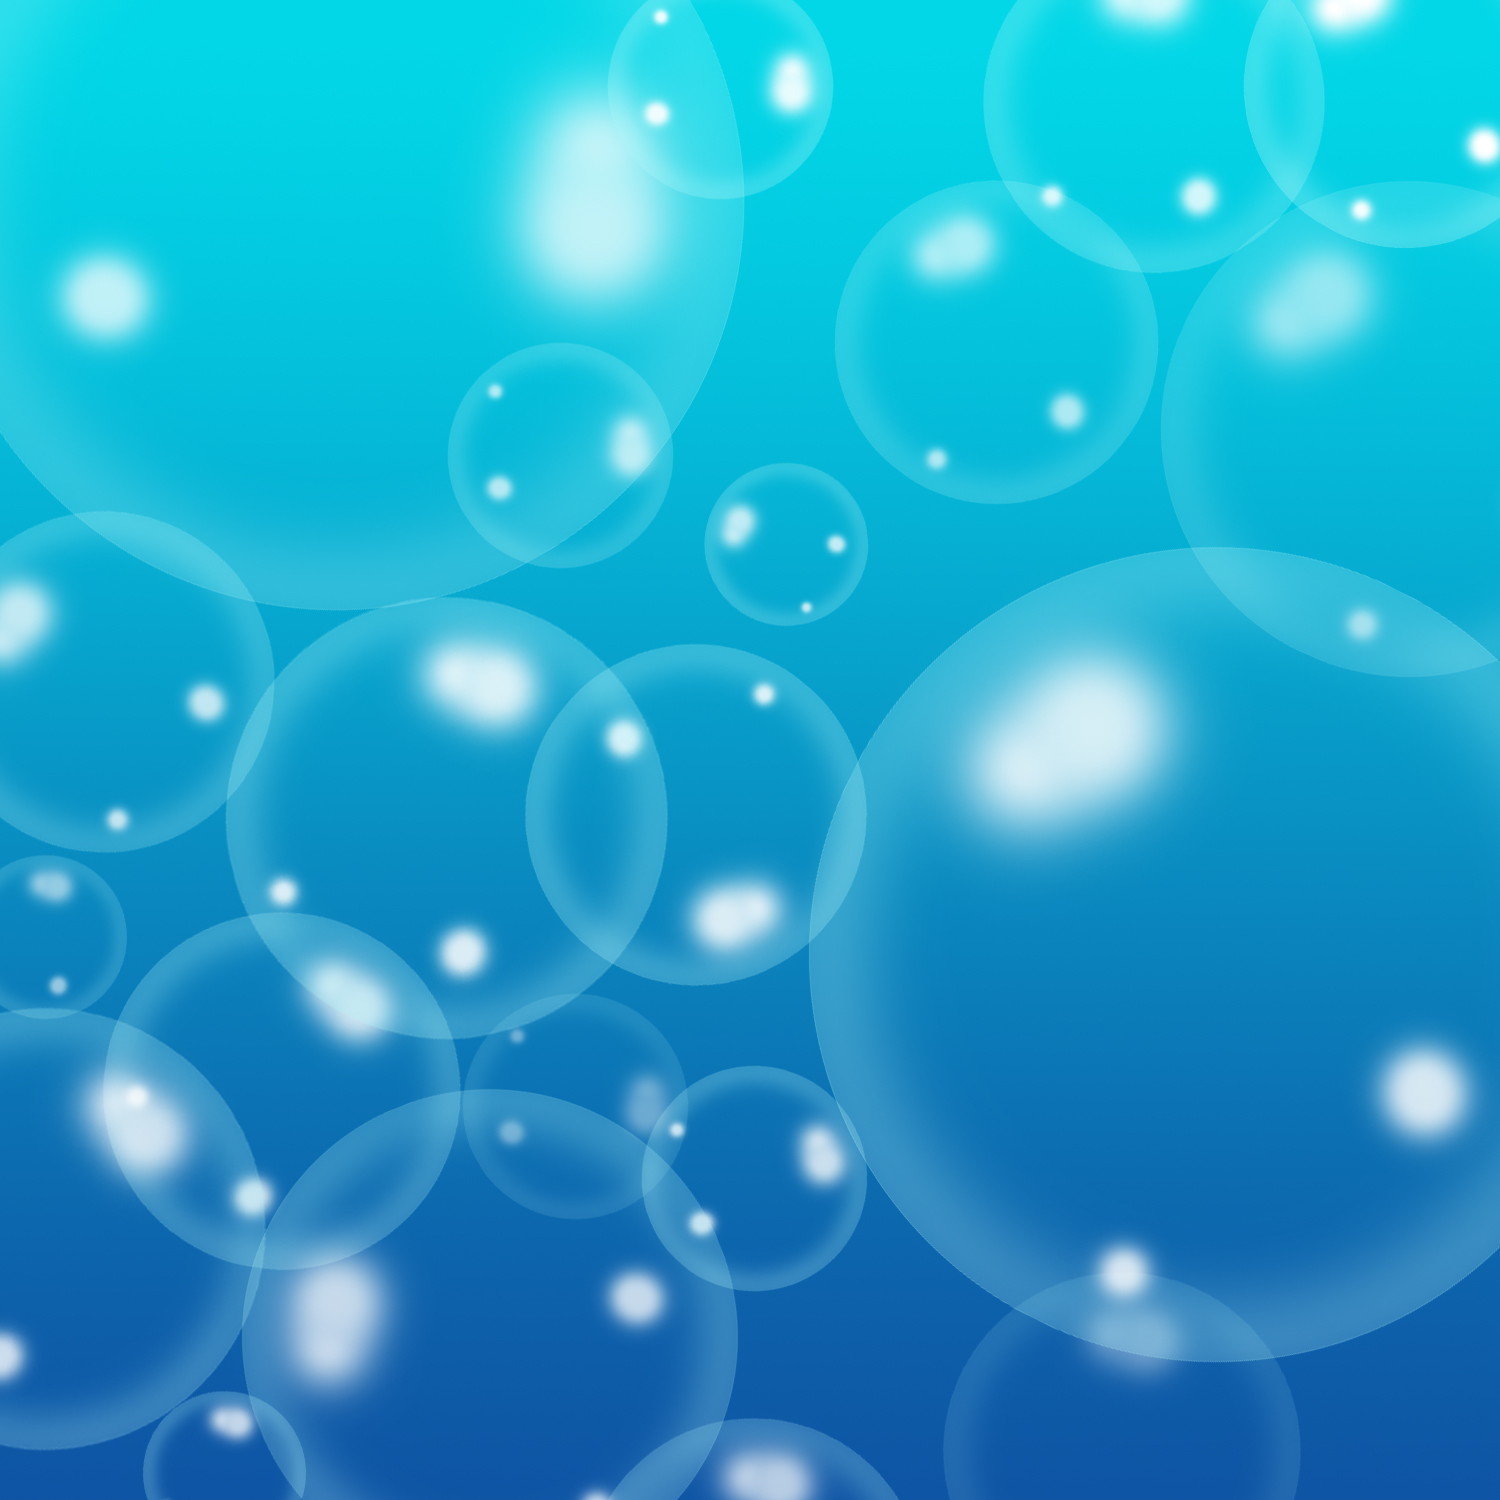 Big Bubbles Template